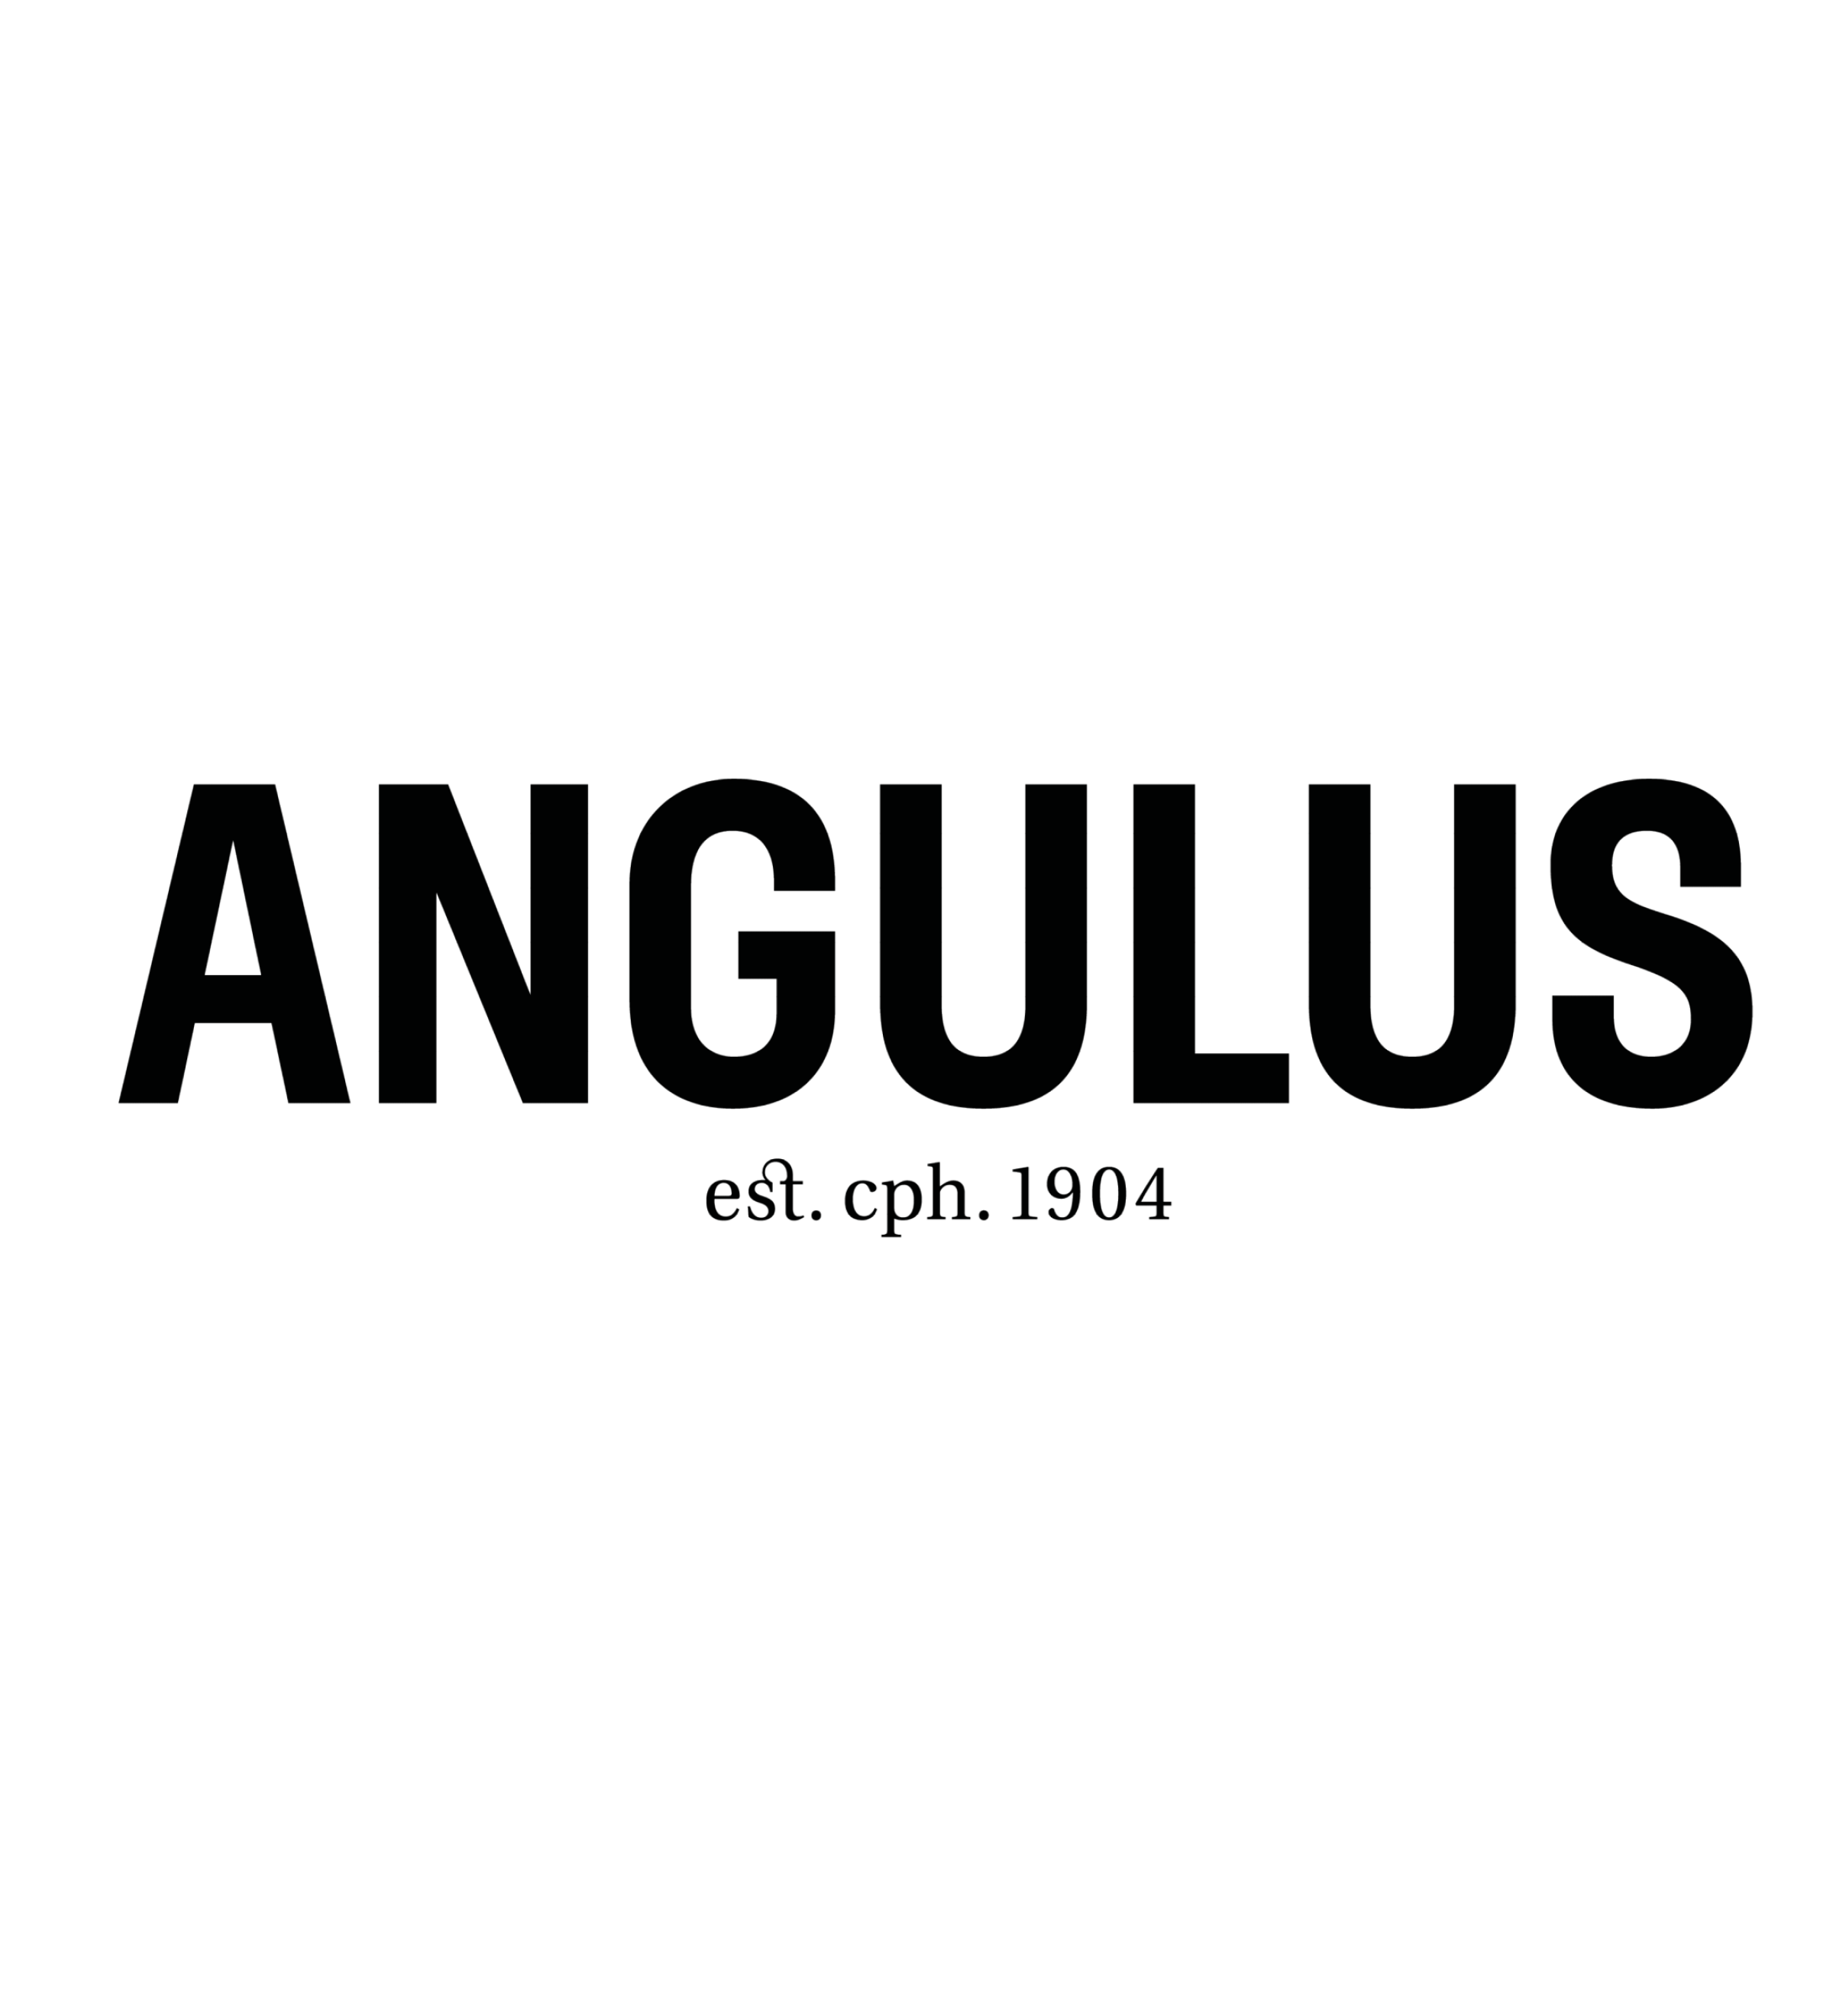 angulus logo